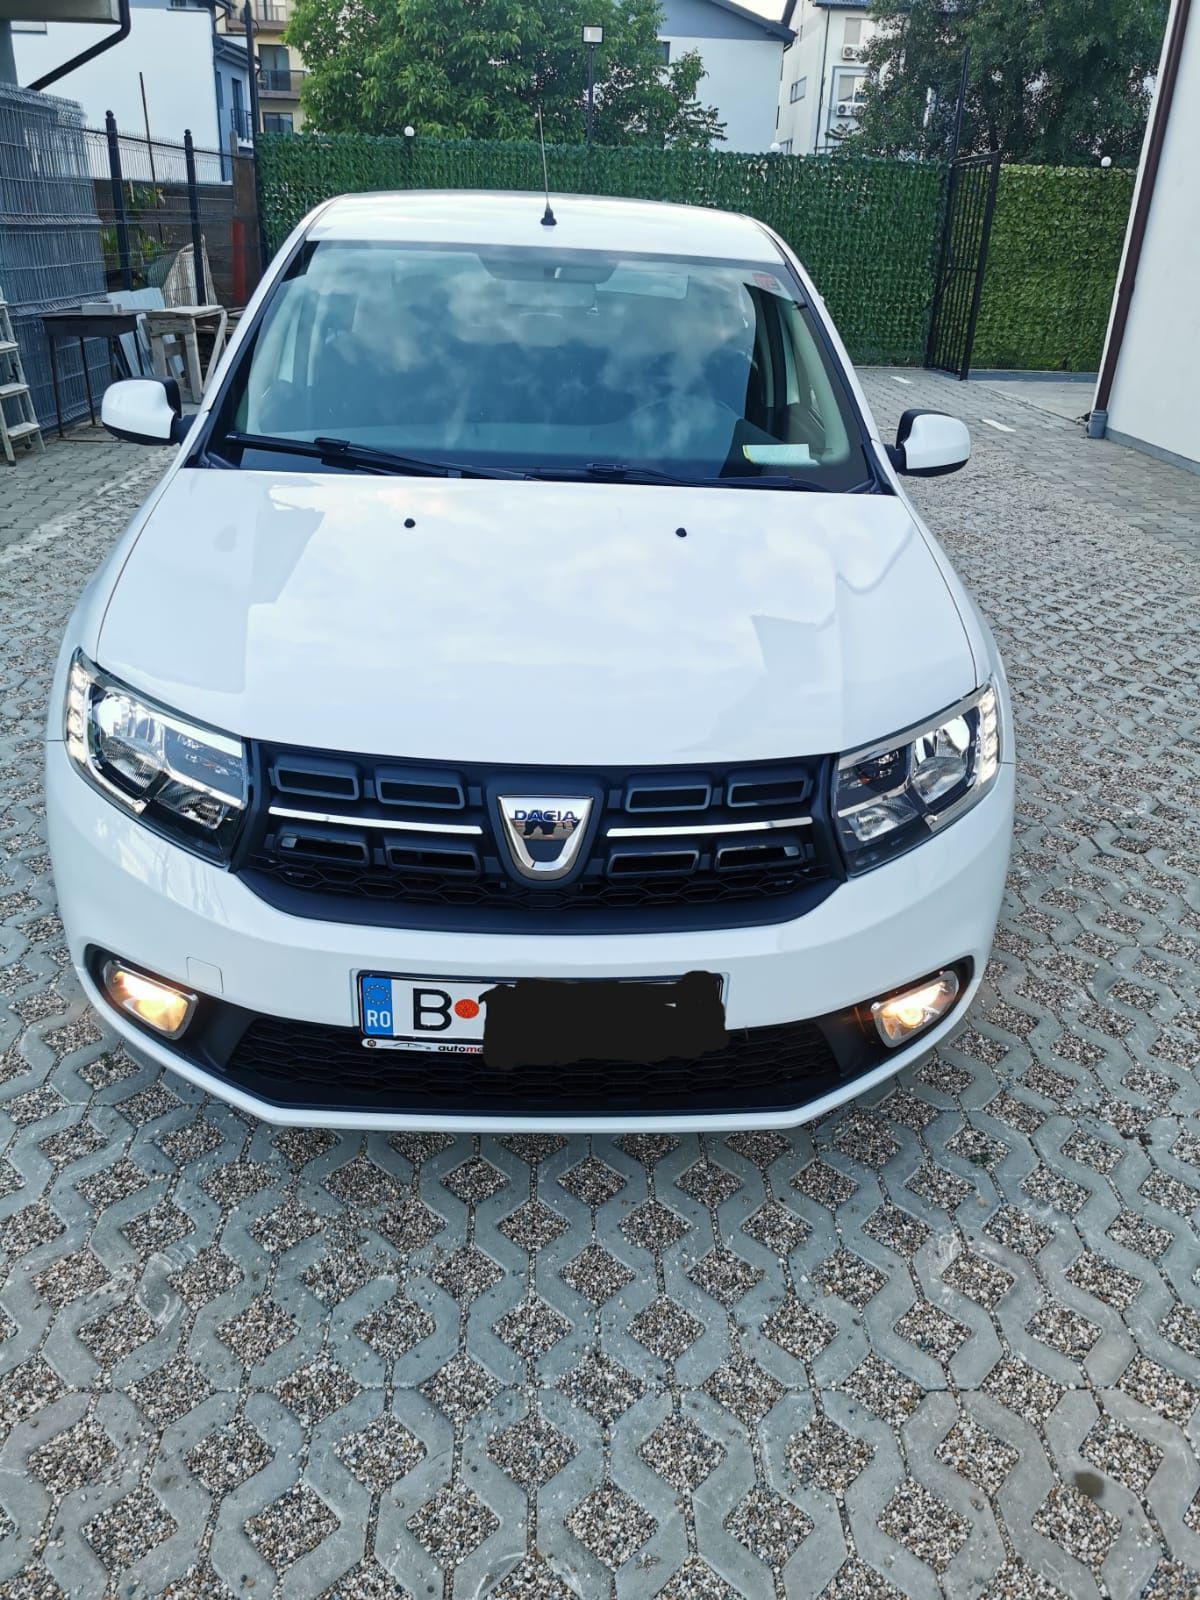 Dacia Logan 2019 Euro 6 Led. AC